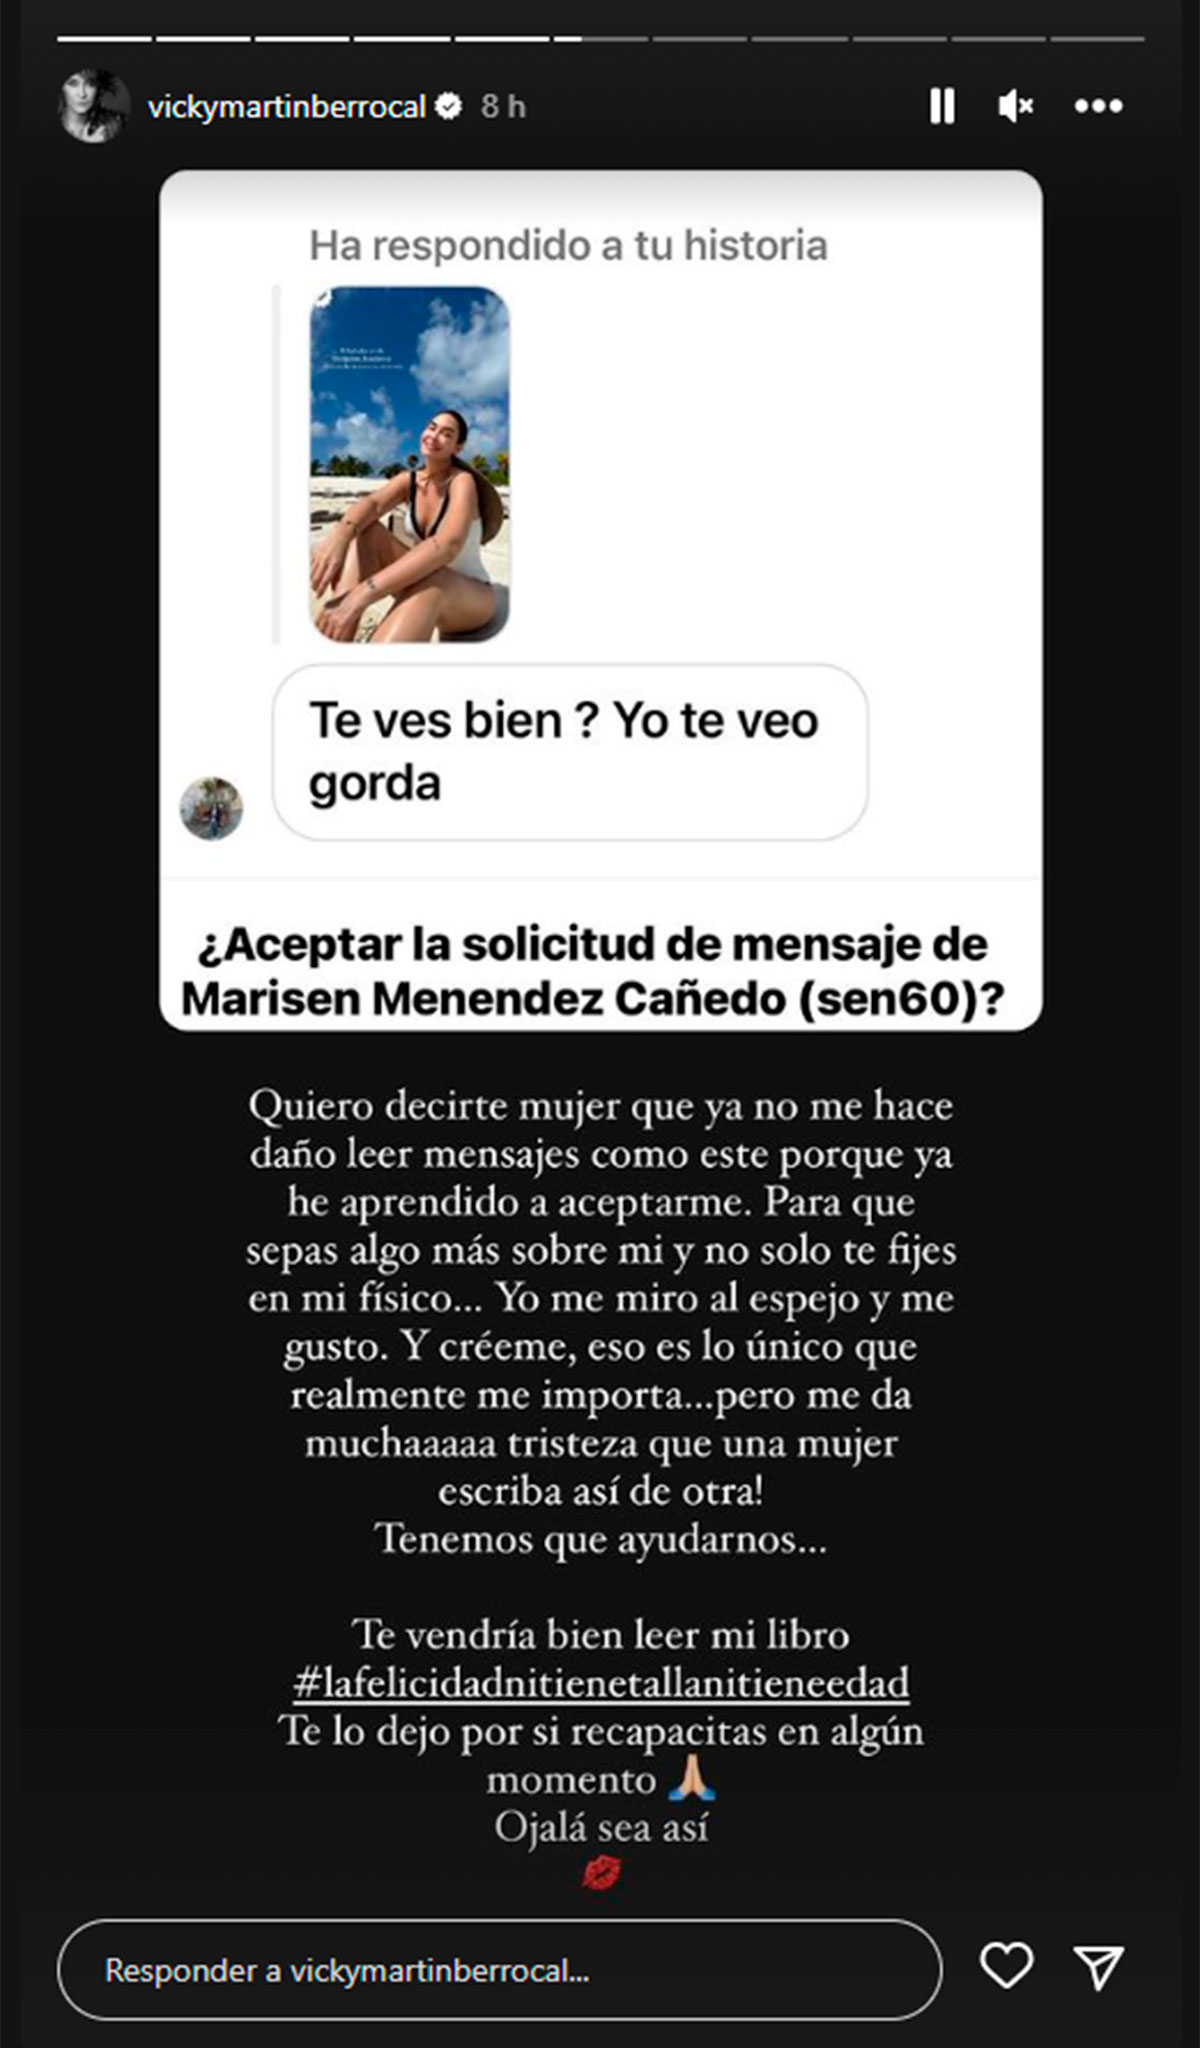 La rotunda respuesta de Vicky Martín Berrocal a un ataque sobre su físico